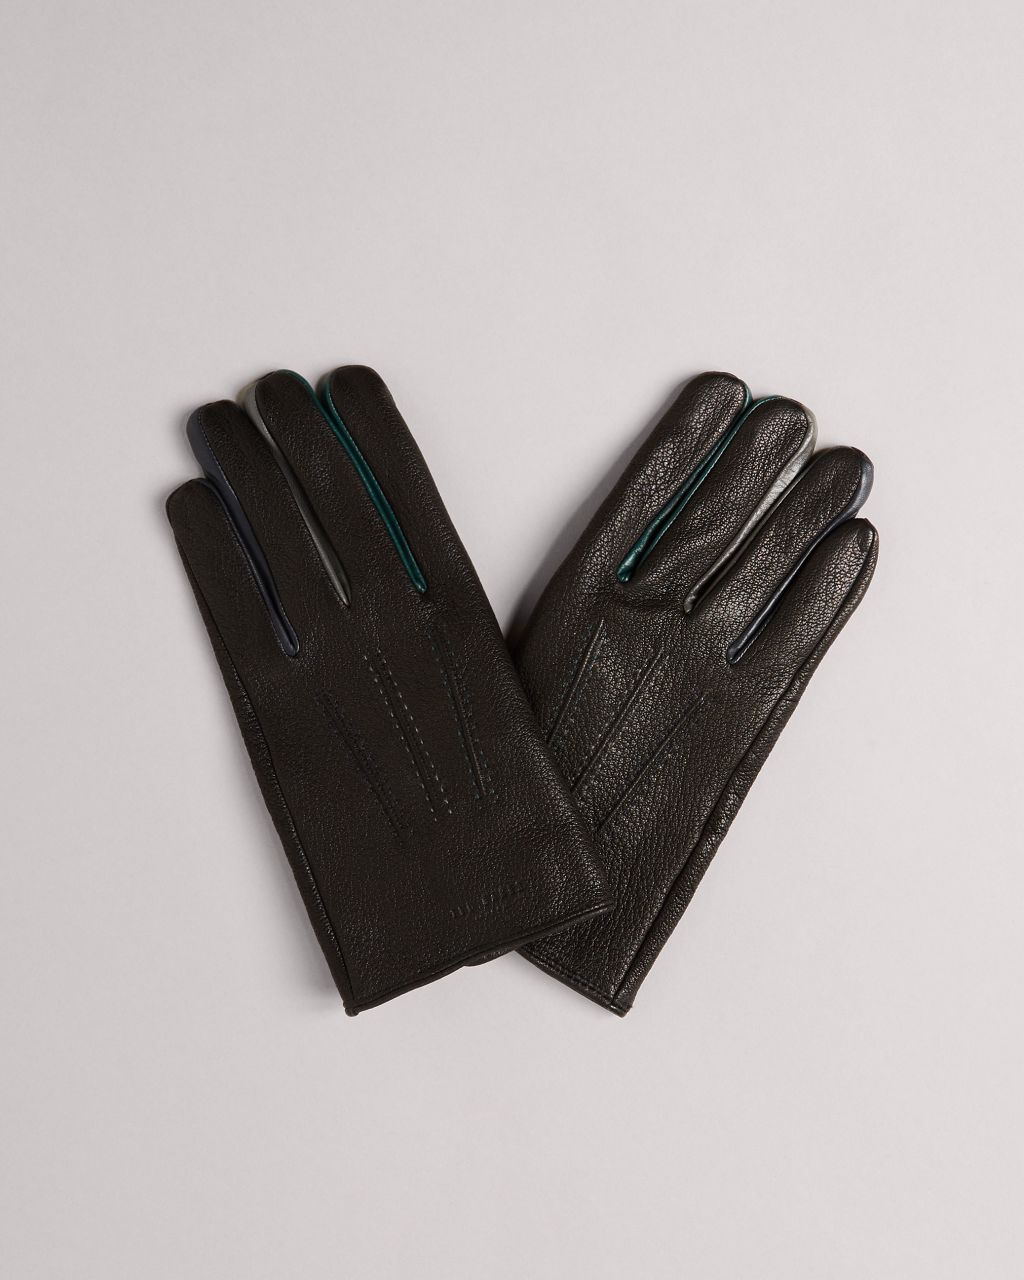 Ted Baker Men's Leather Gloves in Black, Parmed